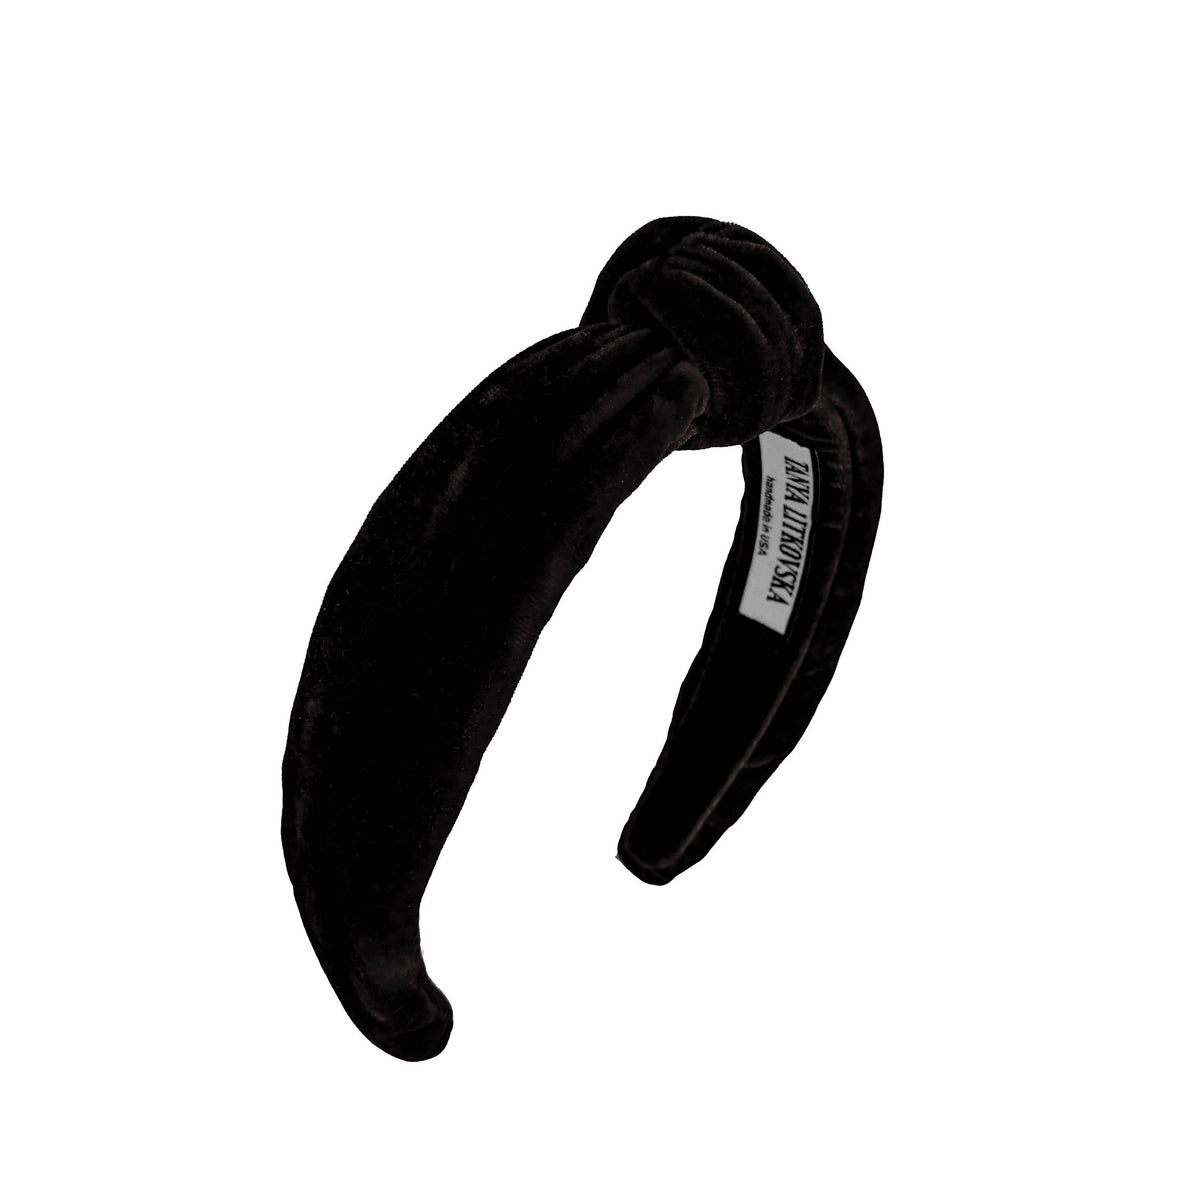 Black Velvet Headband | TOP KNOT HEADBANDS | Thin headbands